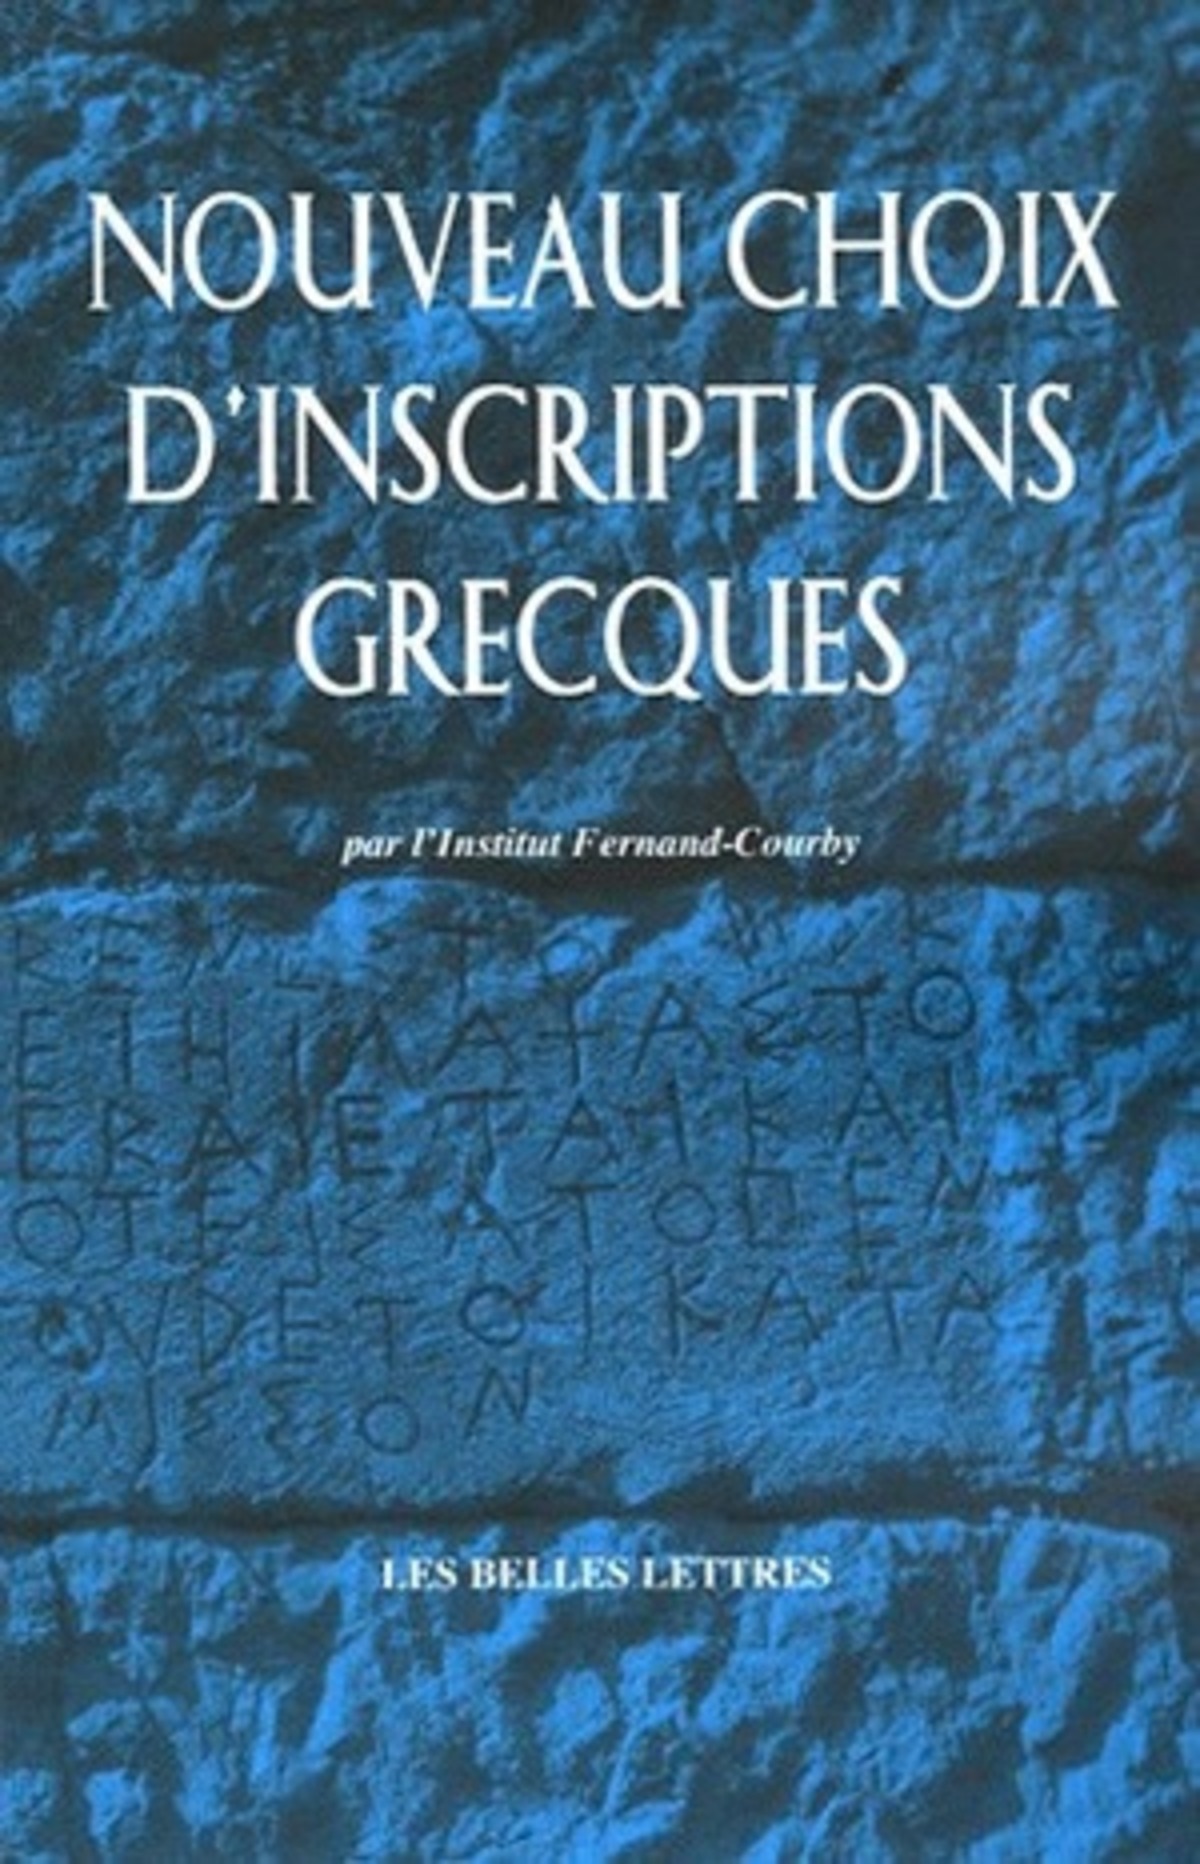 Nouveau choix d'inscriptions grecques